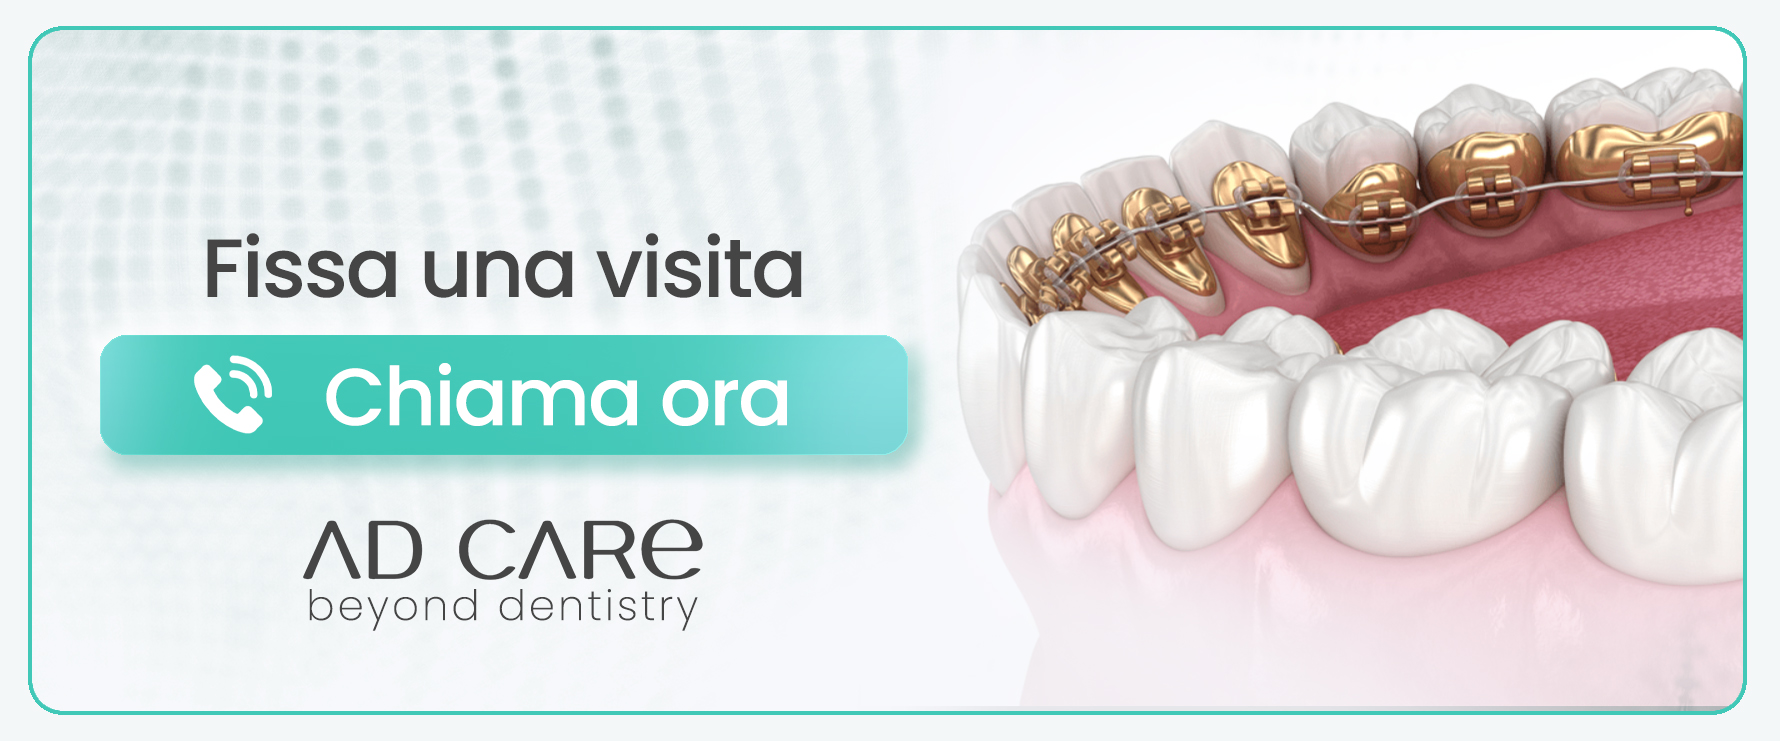 ortodonzia-atm milano centro 